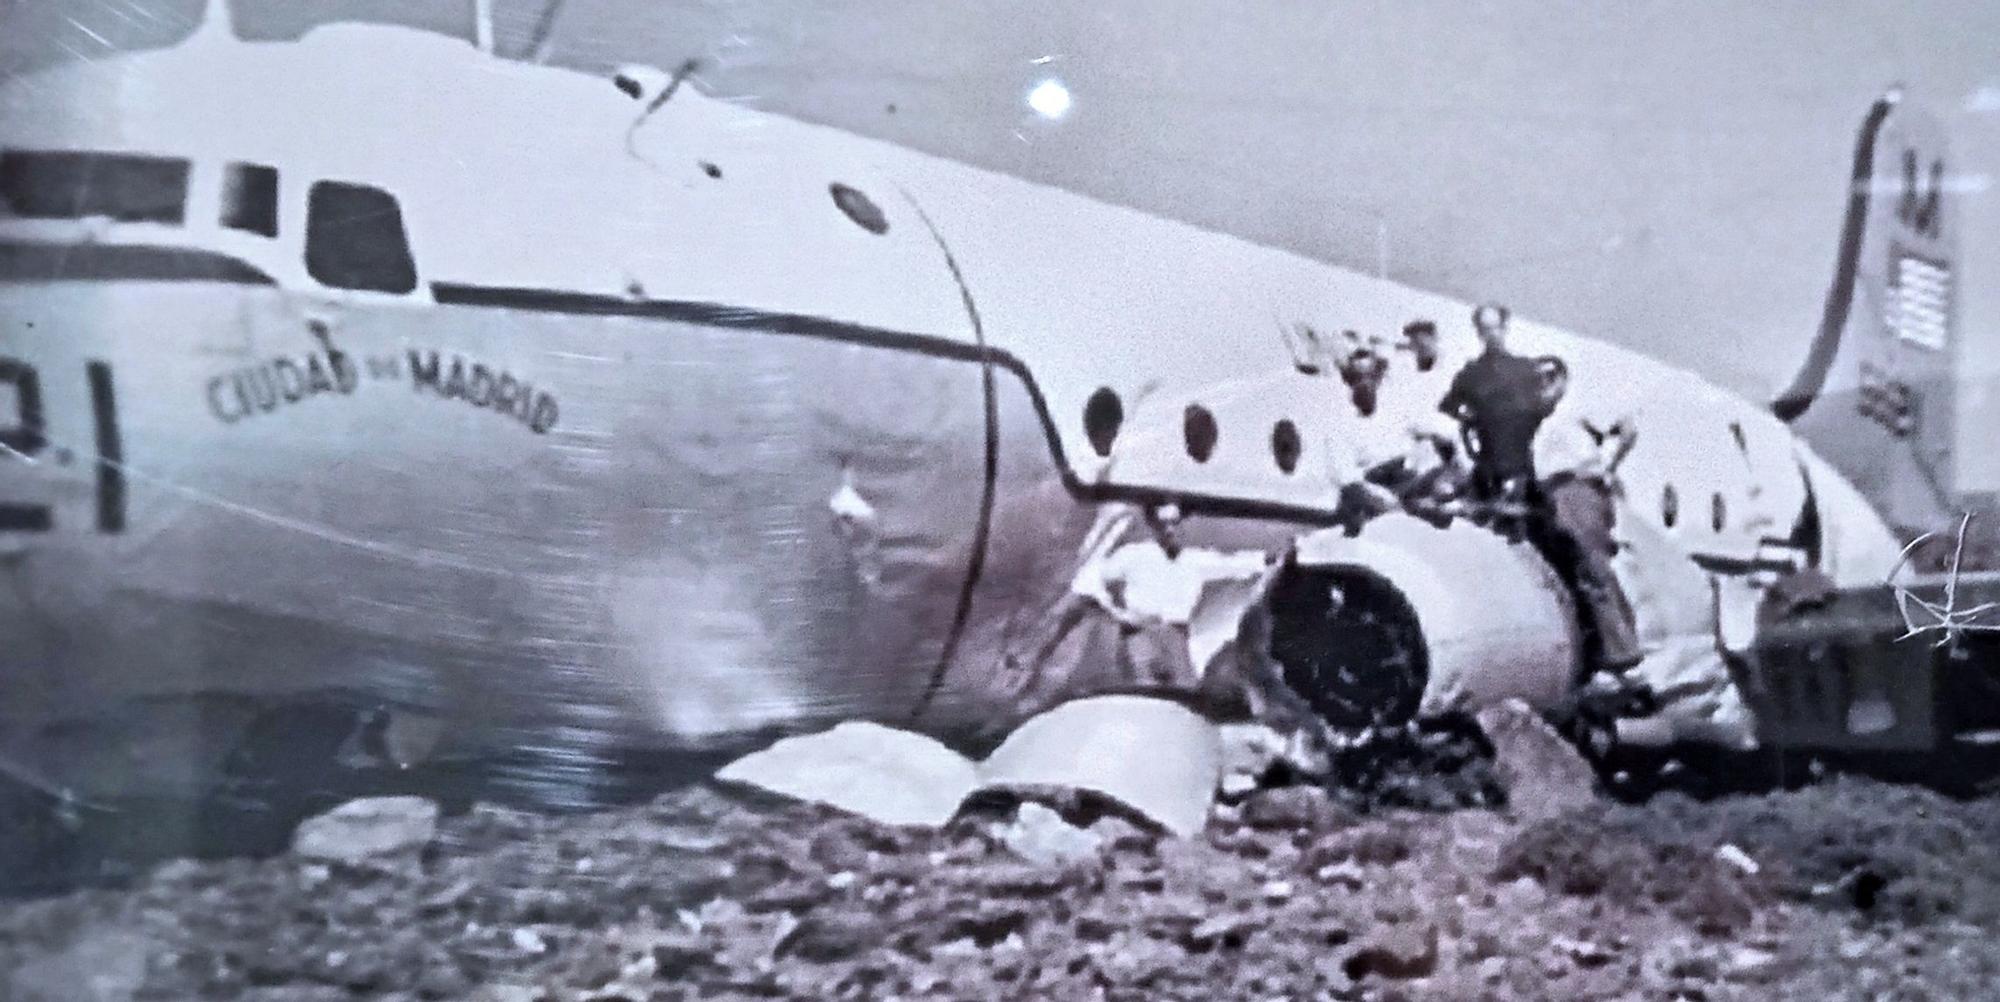 Lugareños posan junto al avión accidentado, meses después del suceso.jpg